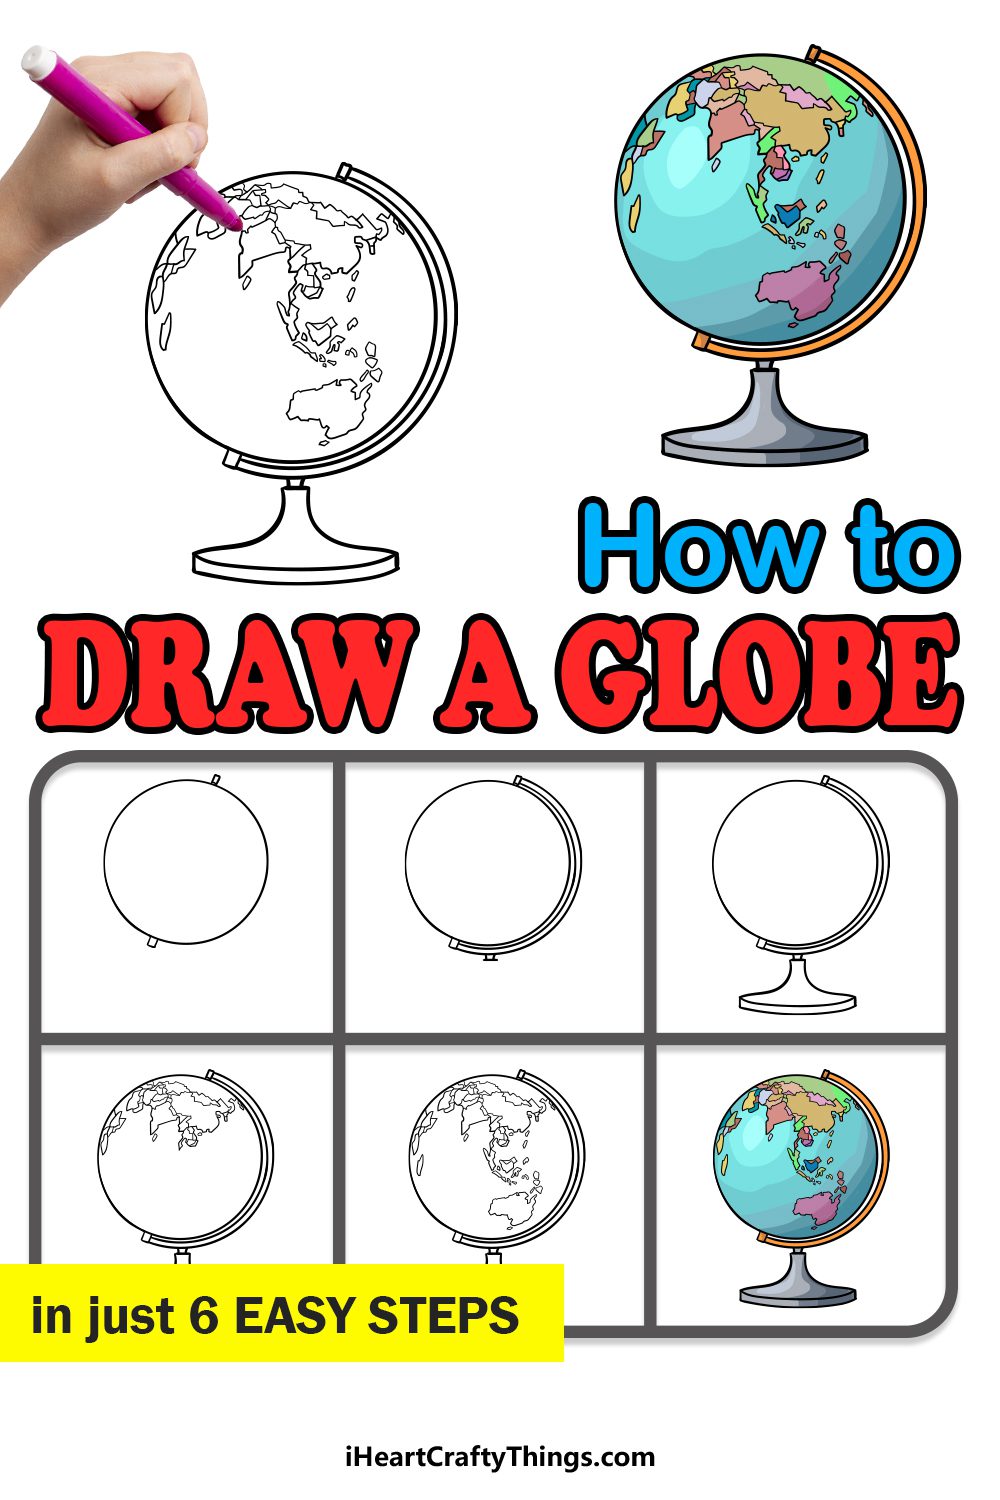 يتم عرض برنامج تعليمي خطوة بخطوة حول كيفية رسم كرة أرضية.